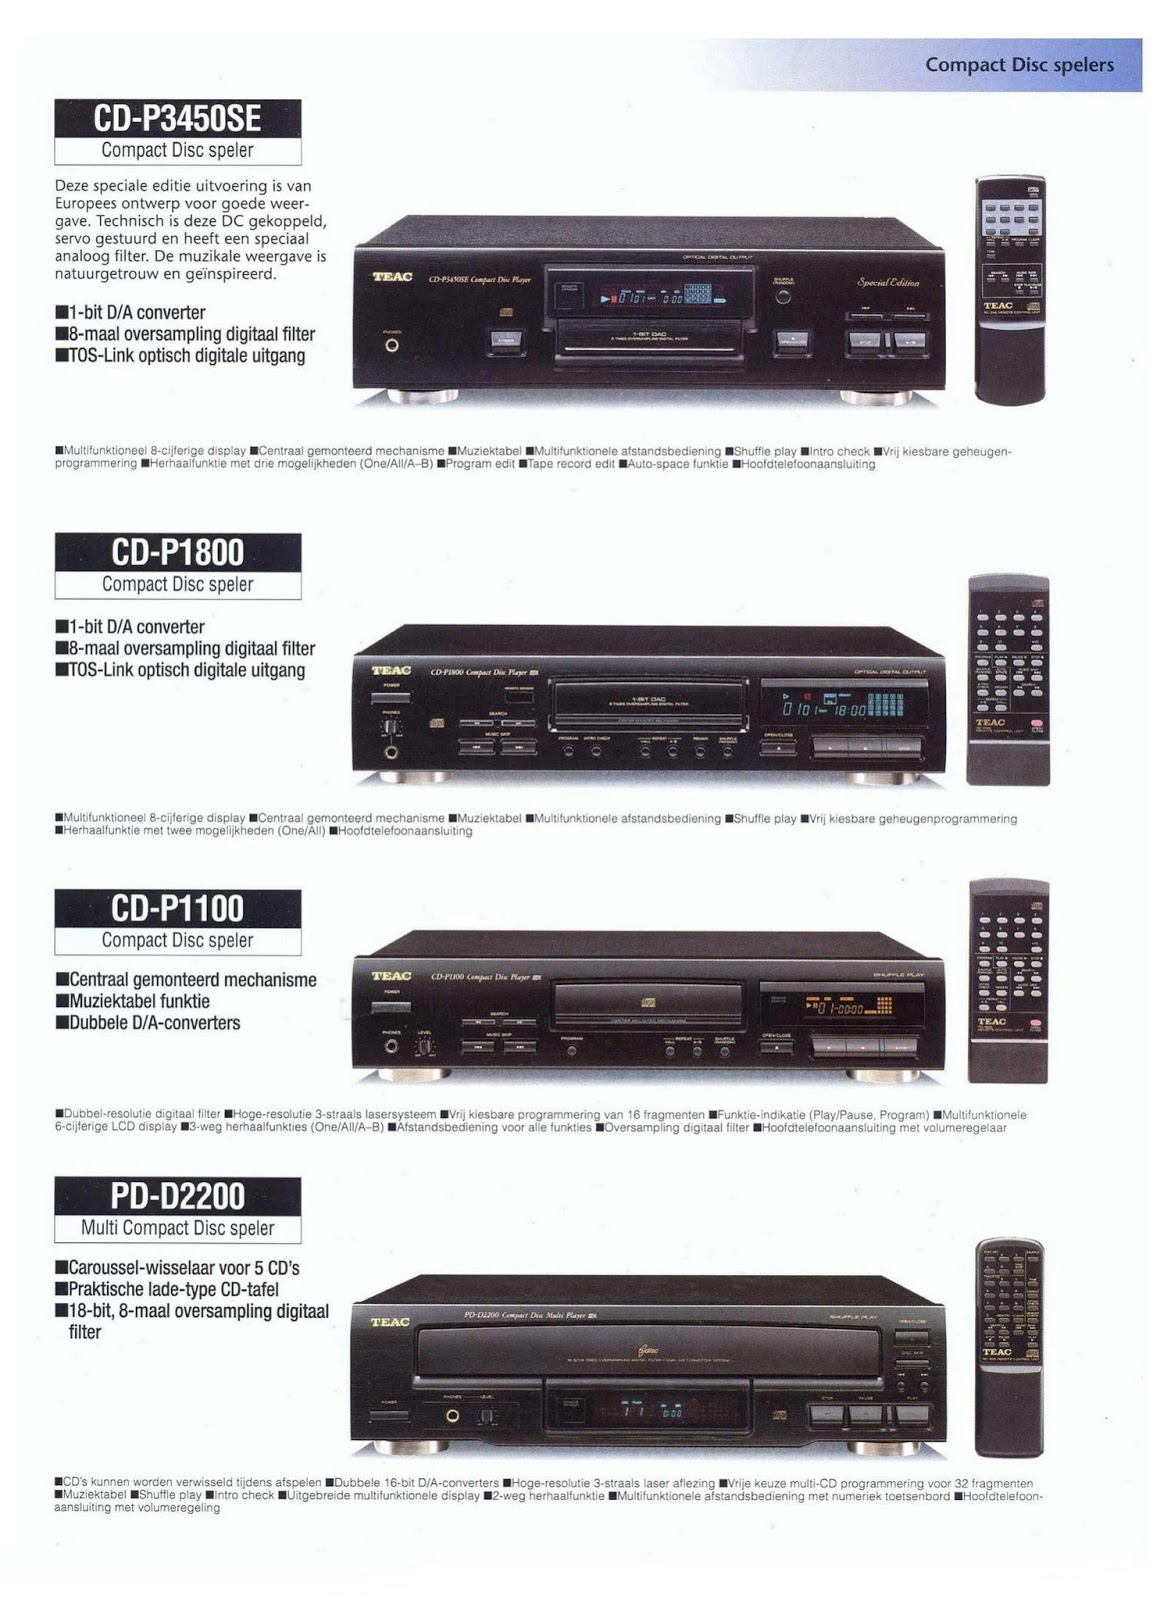 Teac CD-P 1100-1800-3450 SE-PD-D-2200-Prospekt-1987.jpg